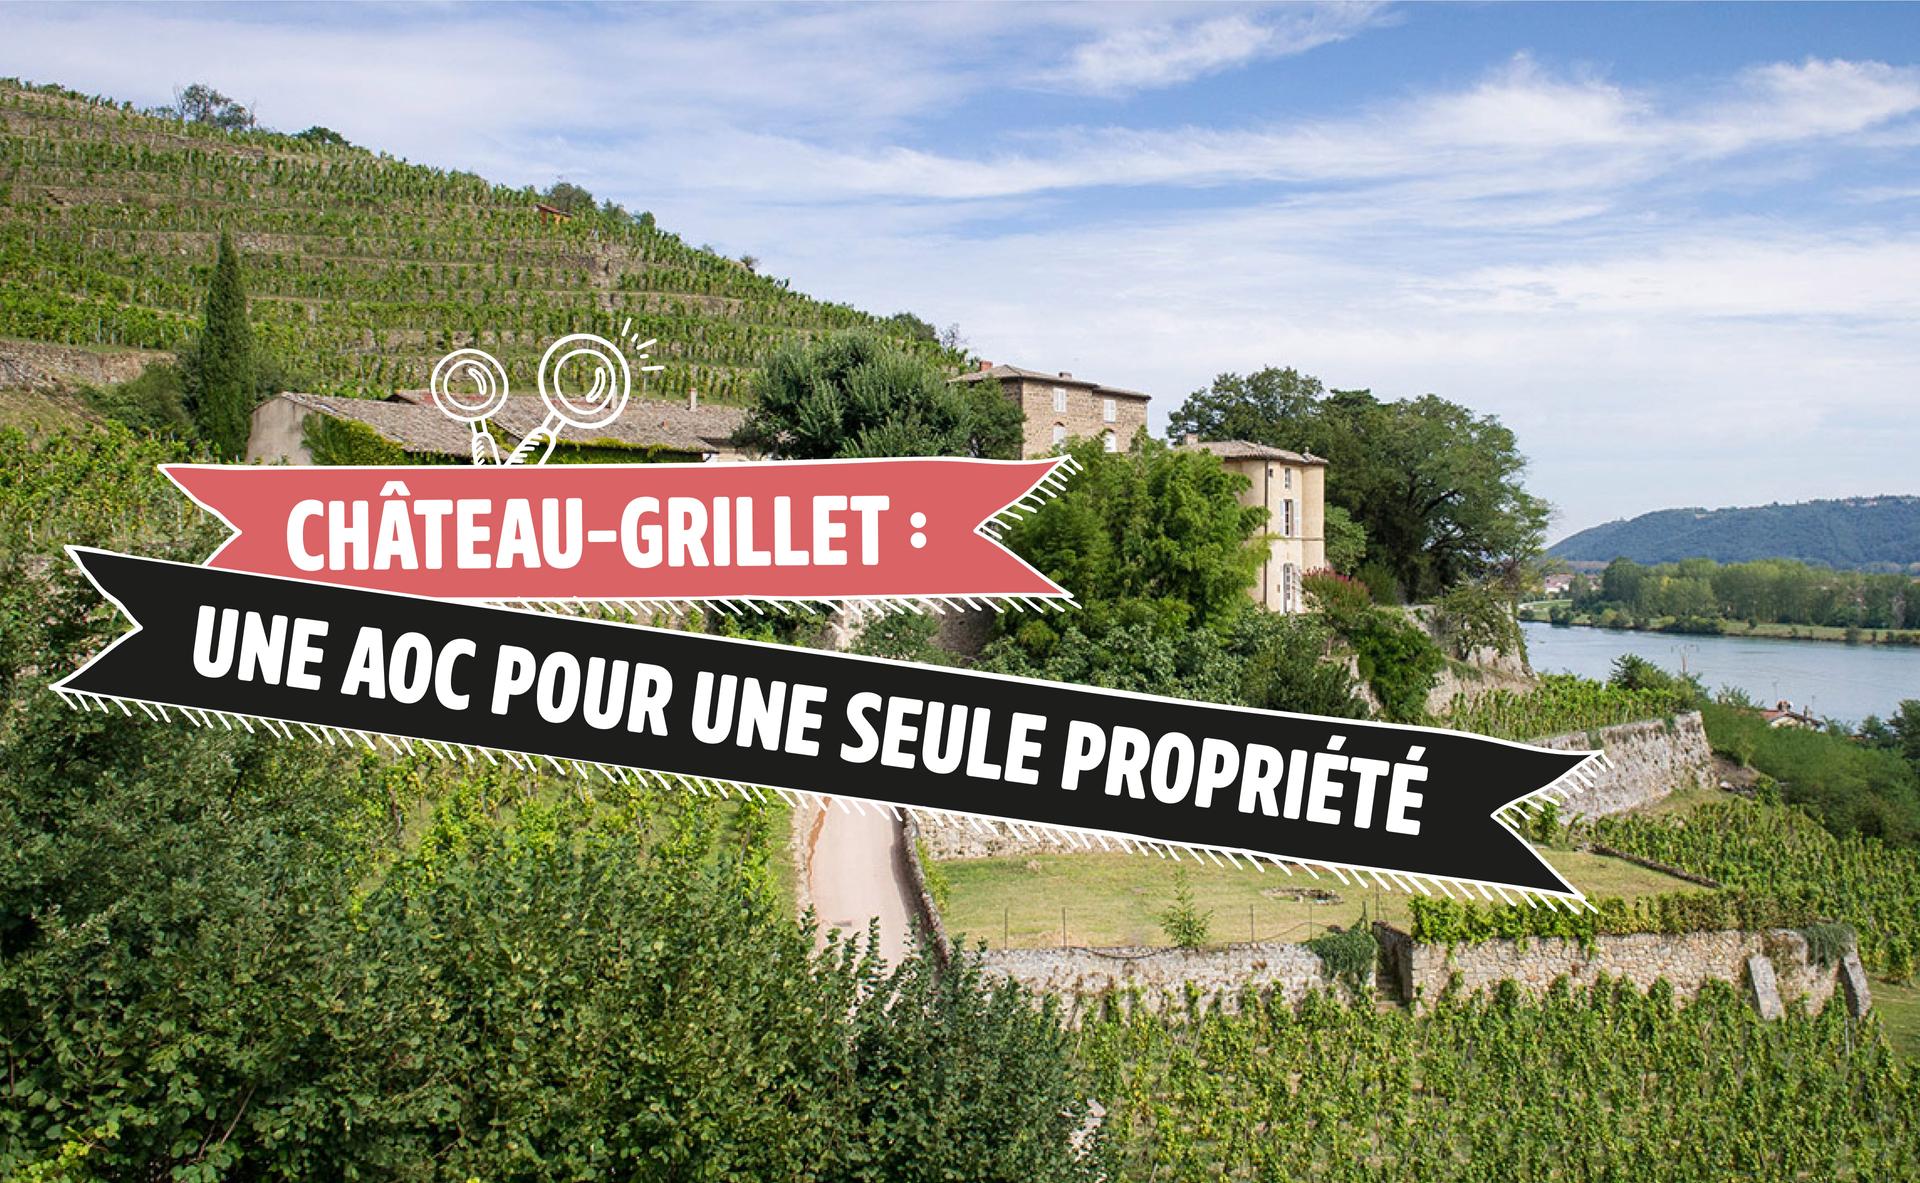 Château-Grillet : une AOC pour une seule propriété